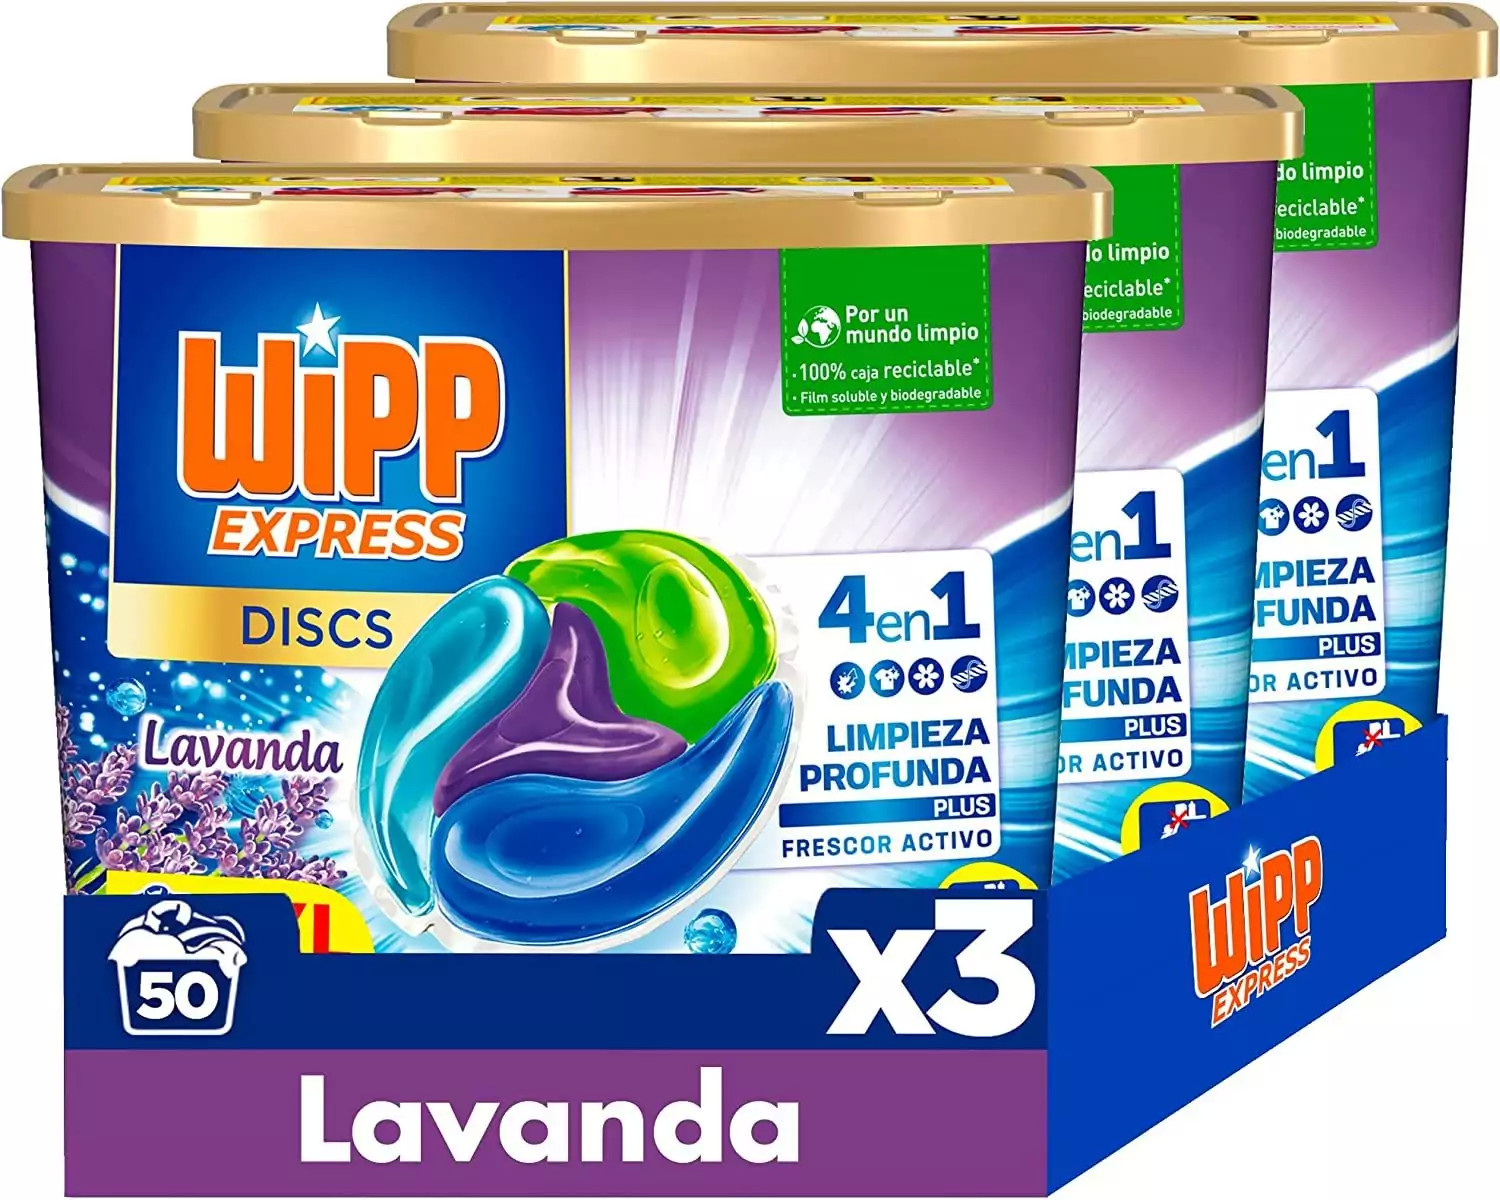 150 cápsulas Wipp Express DISCS 4 en 1 Lavanda detergente lavadora